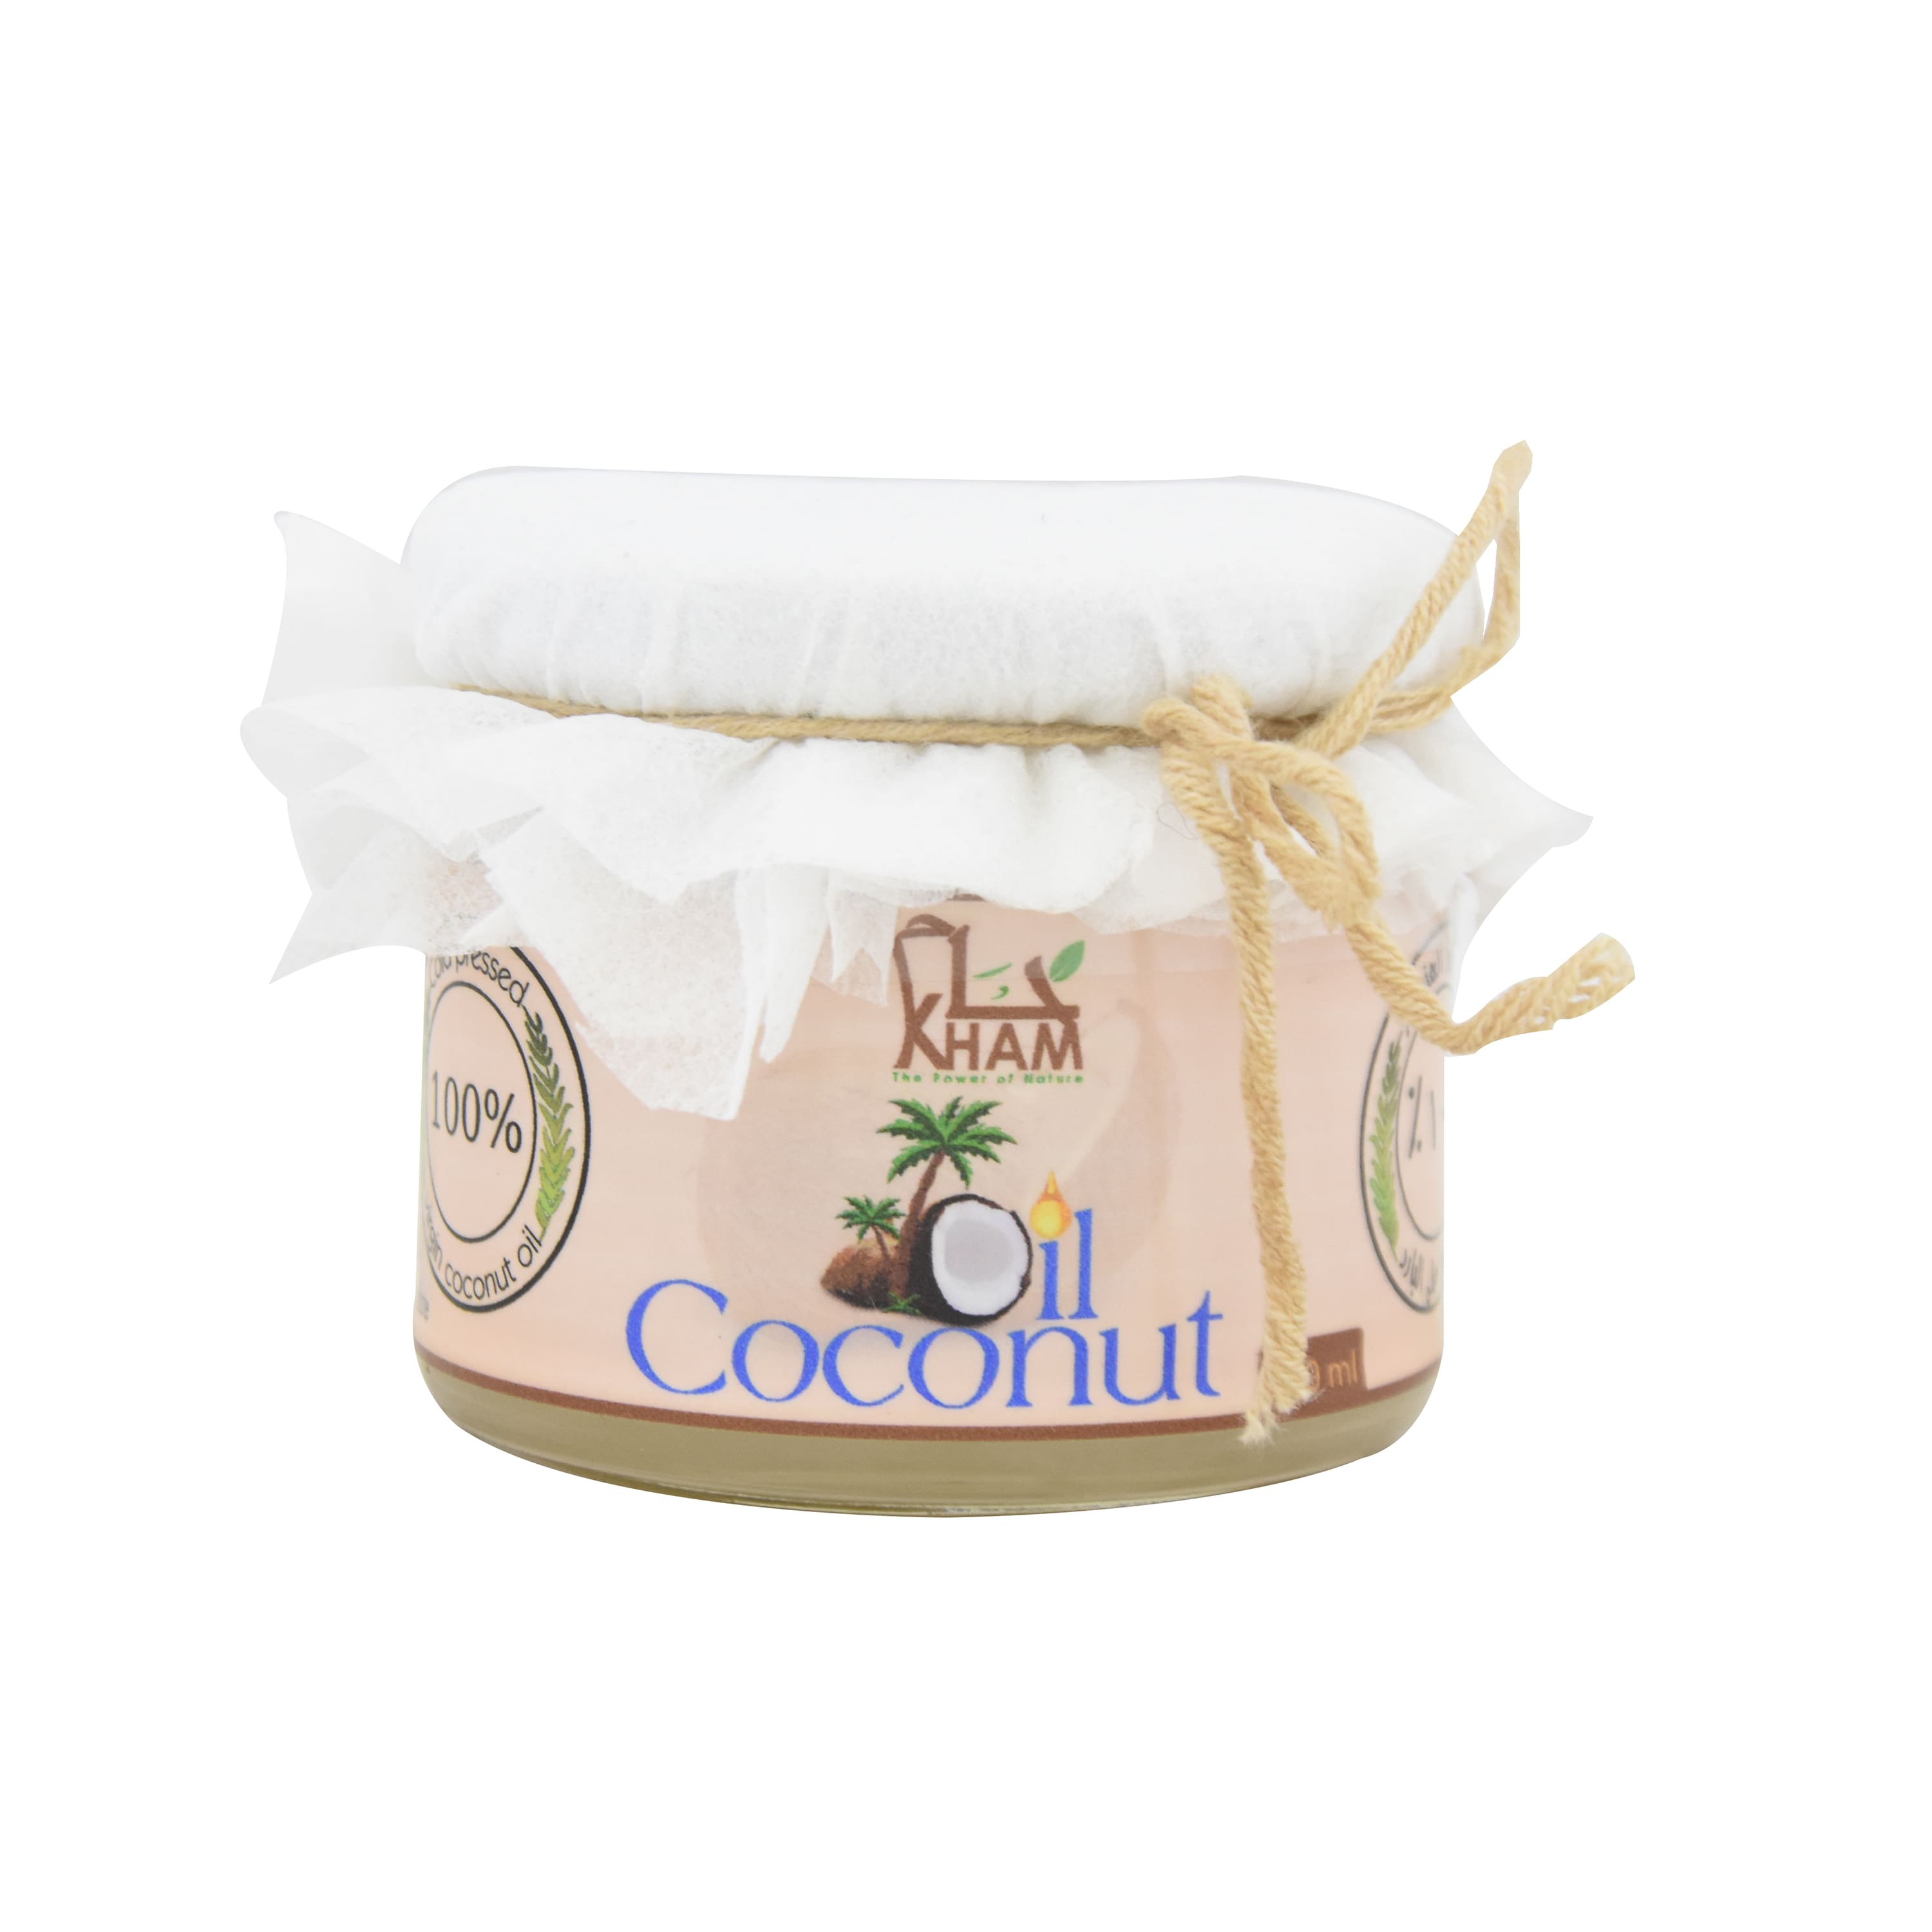 Kham Virgin Coconut Oil Cold Pressed (300 g) 100% Natural